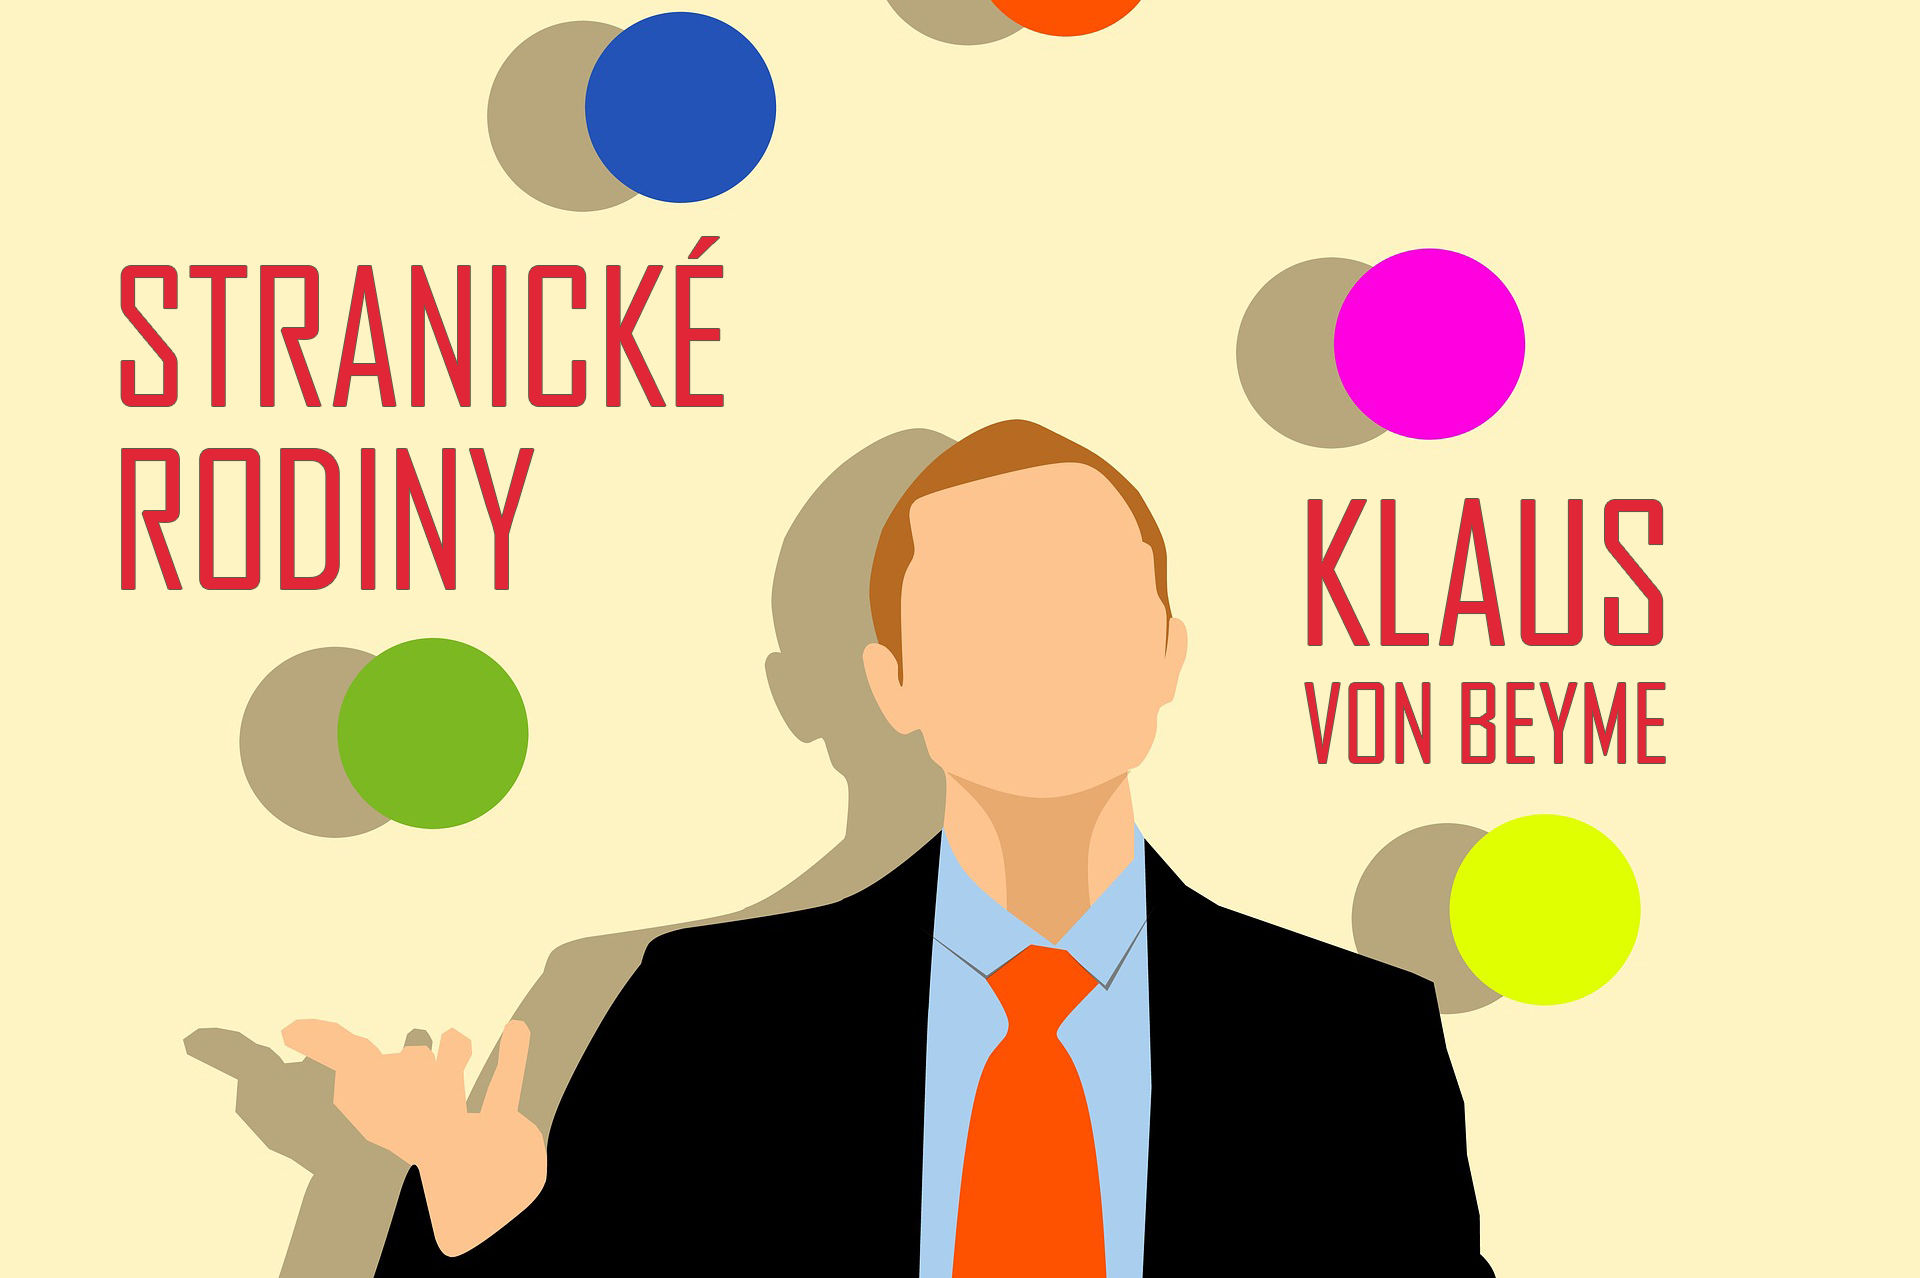 Rodiny politických stran od Klause von Beymeho